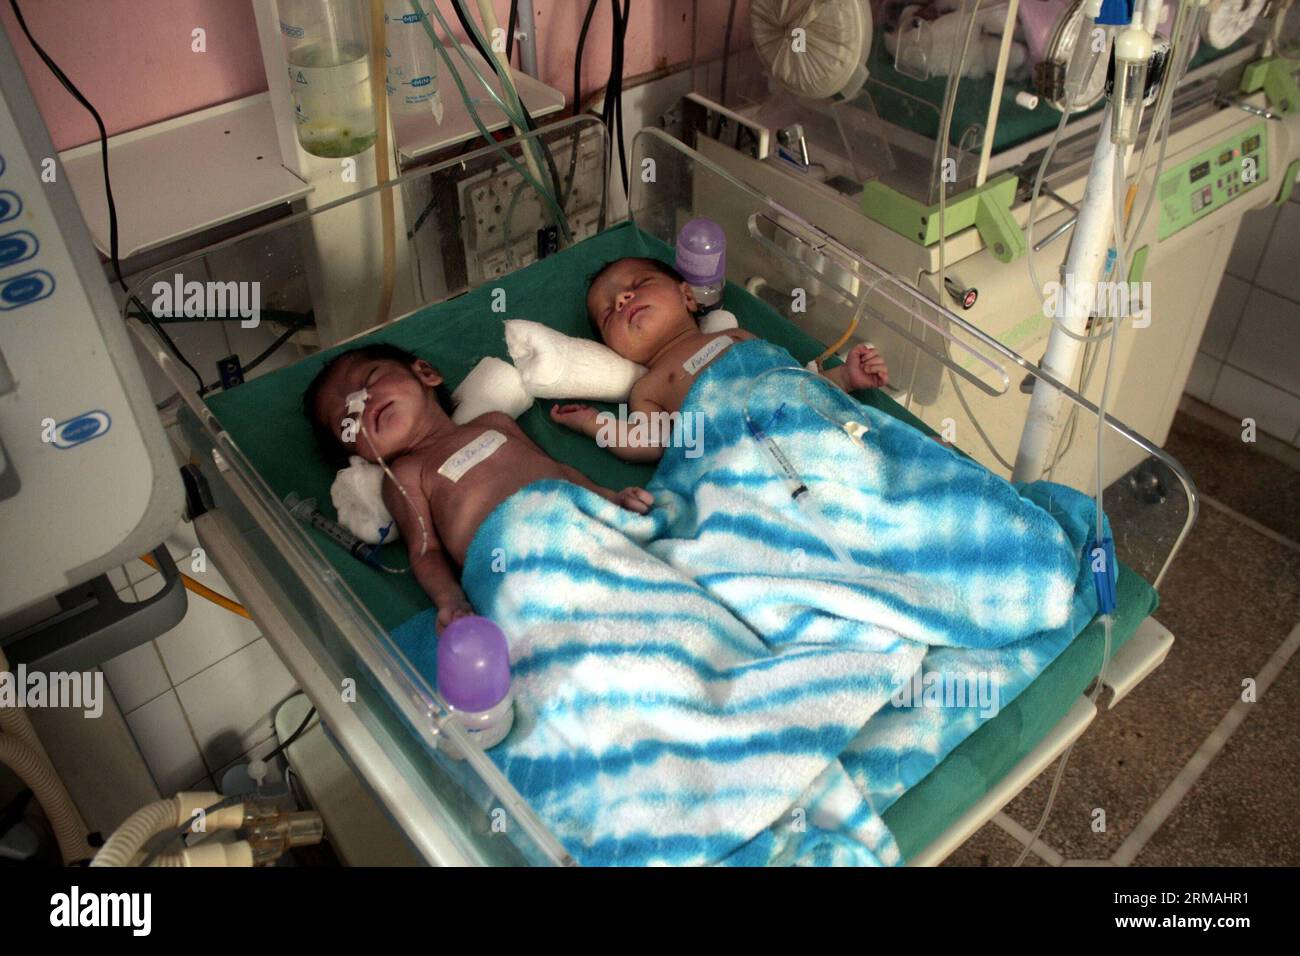 (140711) -- LAHORE, 11. Juli 2014 (Xinhua) -- neugeborene pakistanische Babys lagen am Weltbevölkerungstag in Ostpakistans Lahore, 11. Juli 2014, auf der Intensivstation in einem Kinderzimmer eines Krankenhauses. (Xinhua/Jamil Ahmed) PAKISTAN-LAHORE-WELTBEVÖLKERUNGSTAG PUBLICATIONxNOTxINxCHN LAHORE 11. Juli 2014 XINHUA neugeborene pakistanische Babys lagen in der Intensivstation eines Krankenhauses AM Weltbevölkerungstag in Ostpakistan S Lahore 11. Juli 2014 XINHUA Jamil Ahmed LNOICATIxTIxBLIONNIxN Pakistan Weltbevölkerungstag Stockfoto